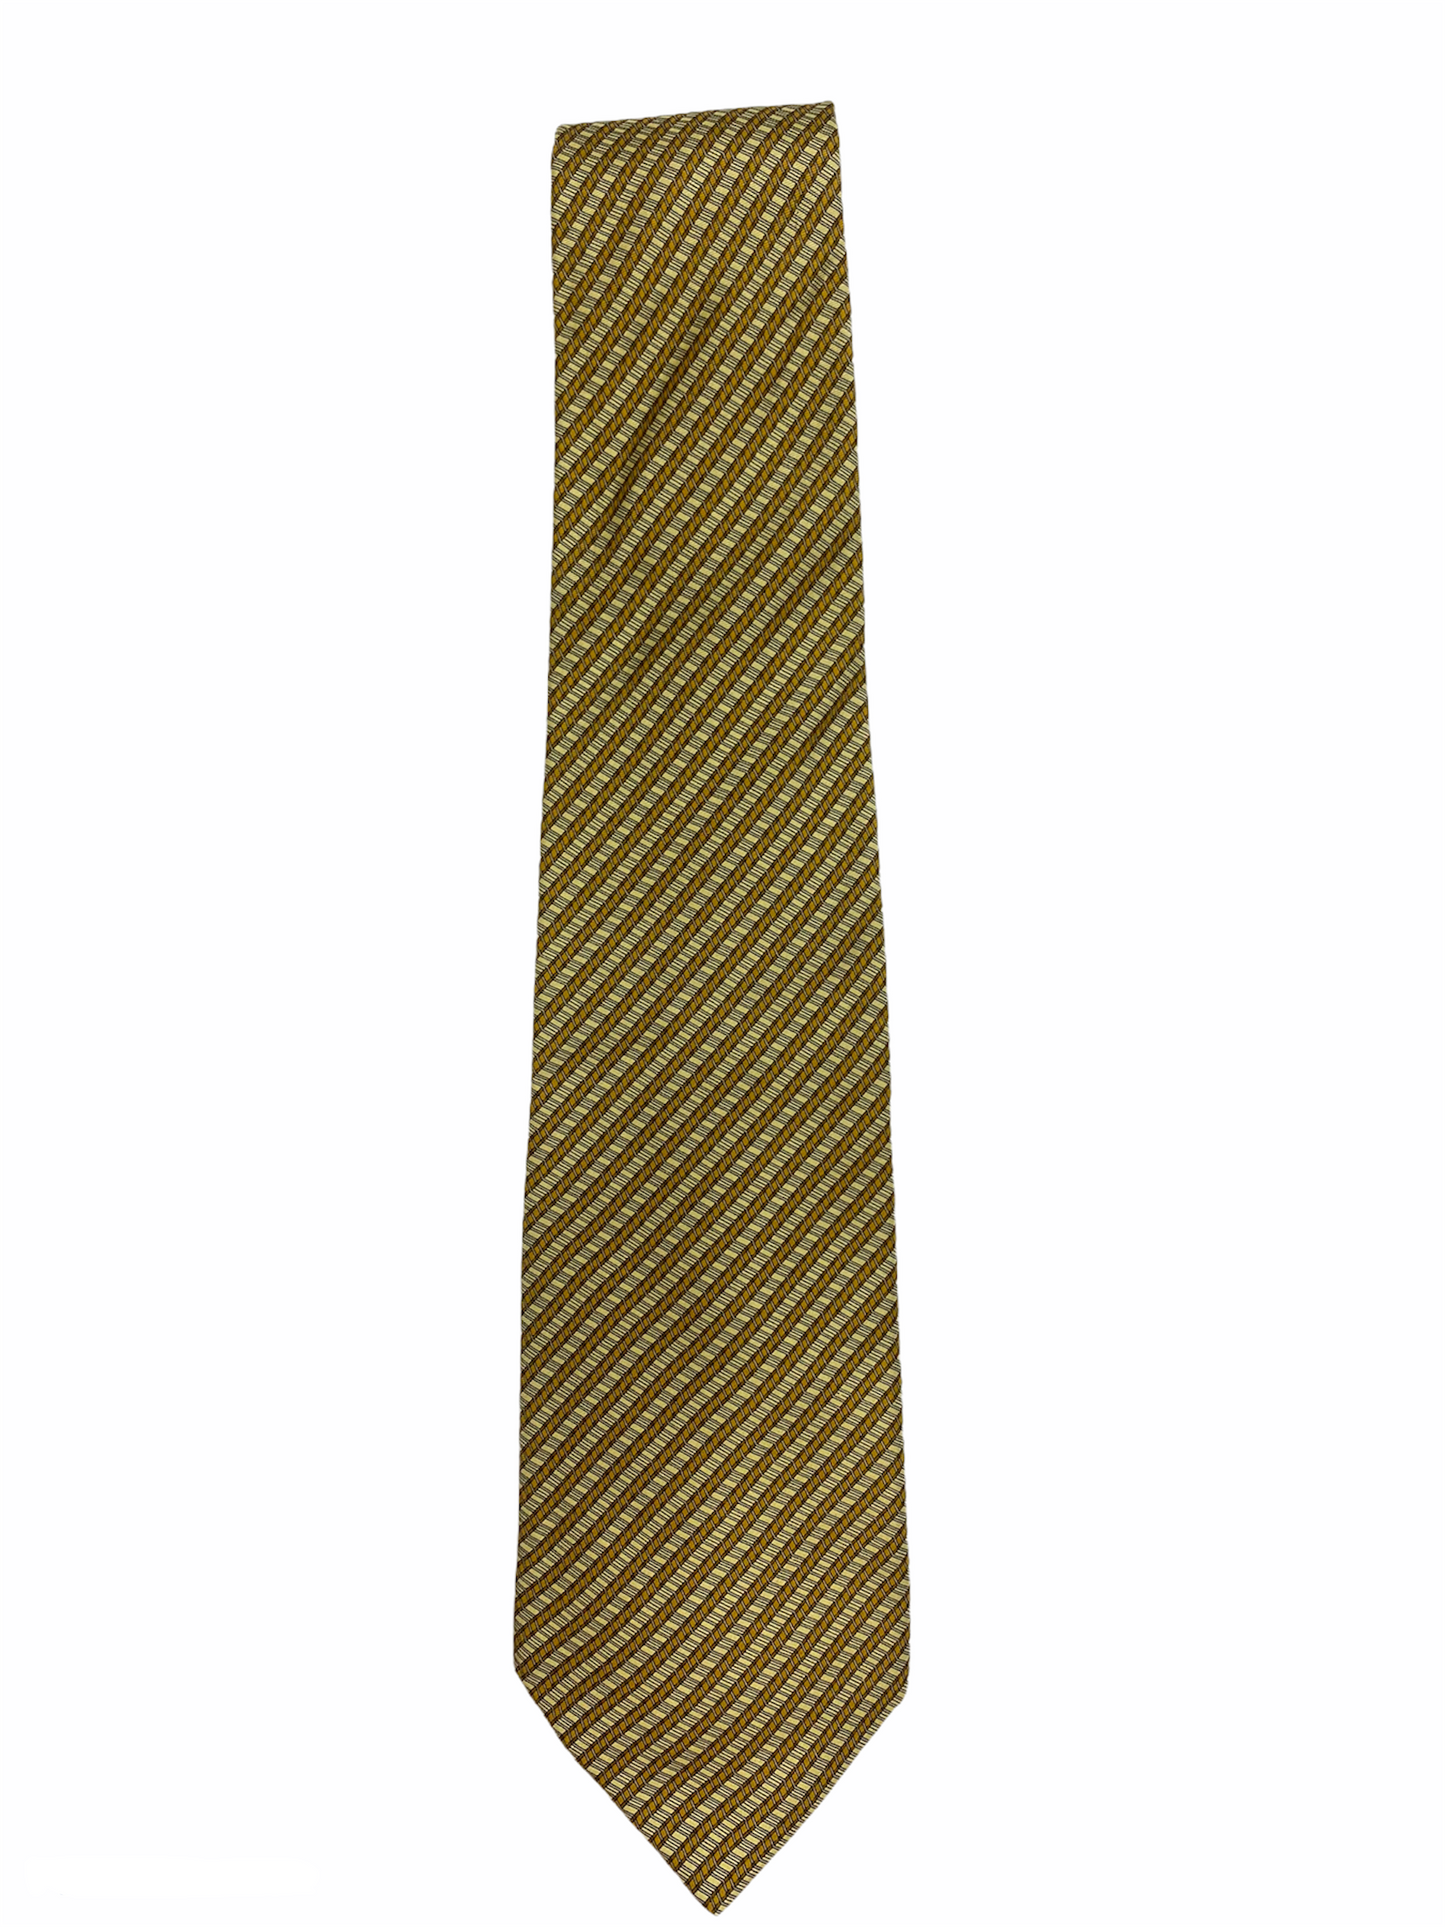 Cravate LANCEL 100% soie, coouleur or/jaunâtre.